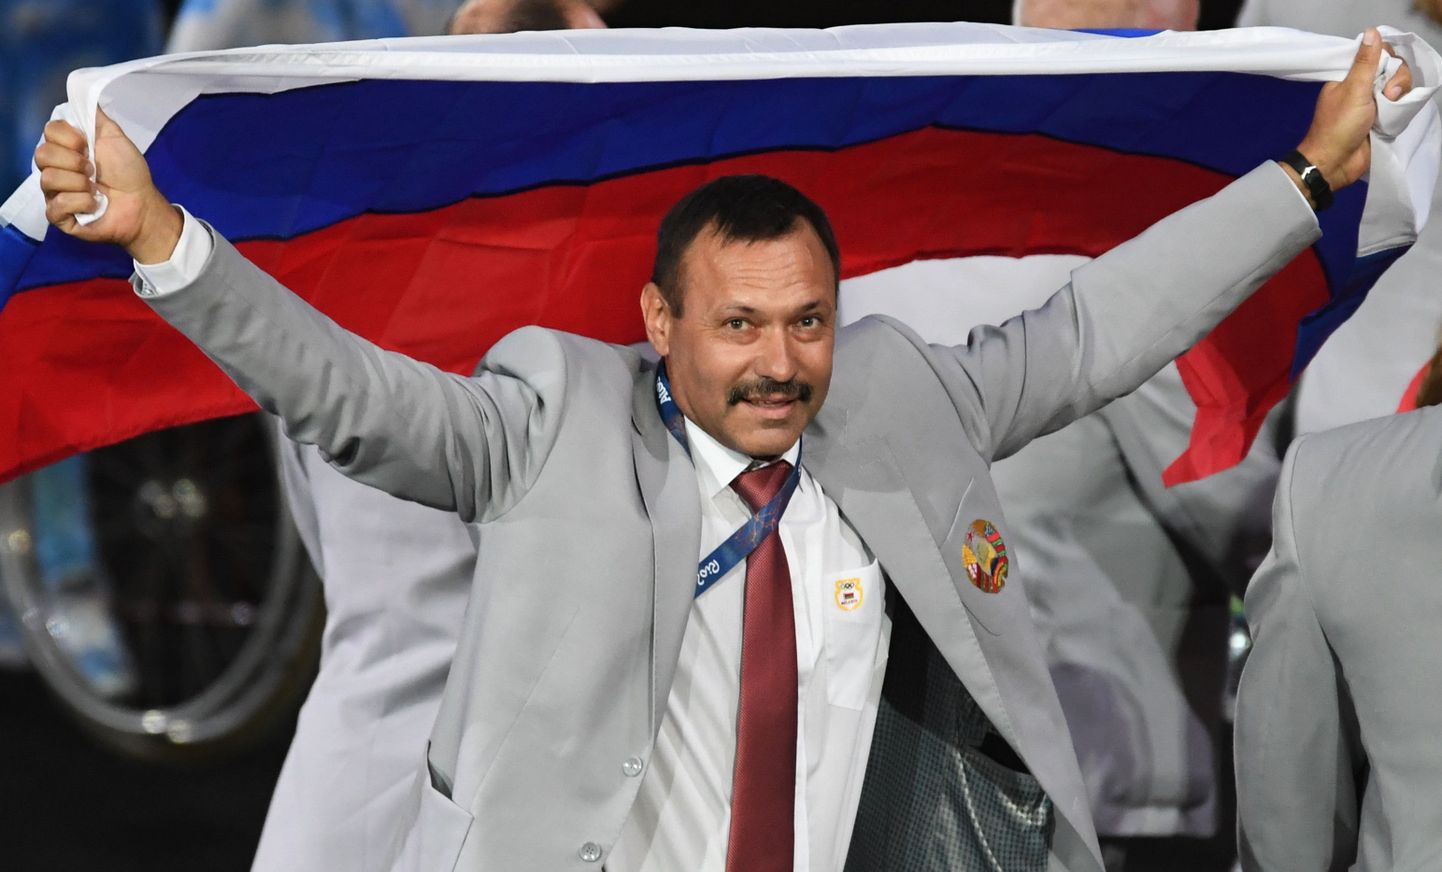 Директор белорусского Центра олимпийской подготовки Андрей Фомочкин вышел на парад участников Паралимпиады с российским флагом.